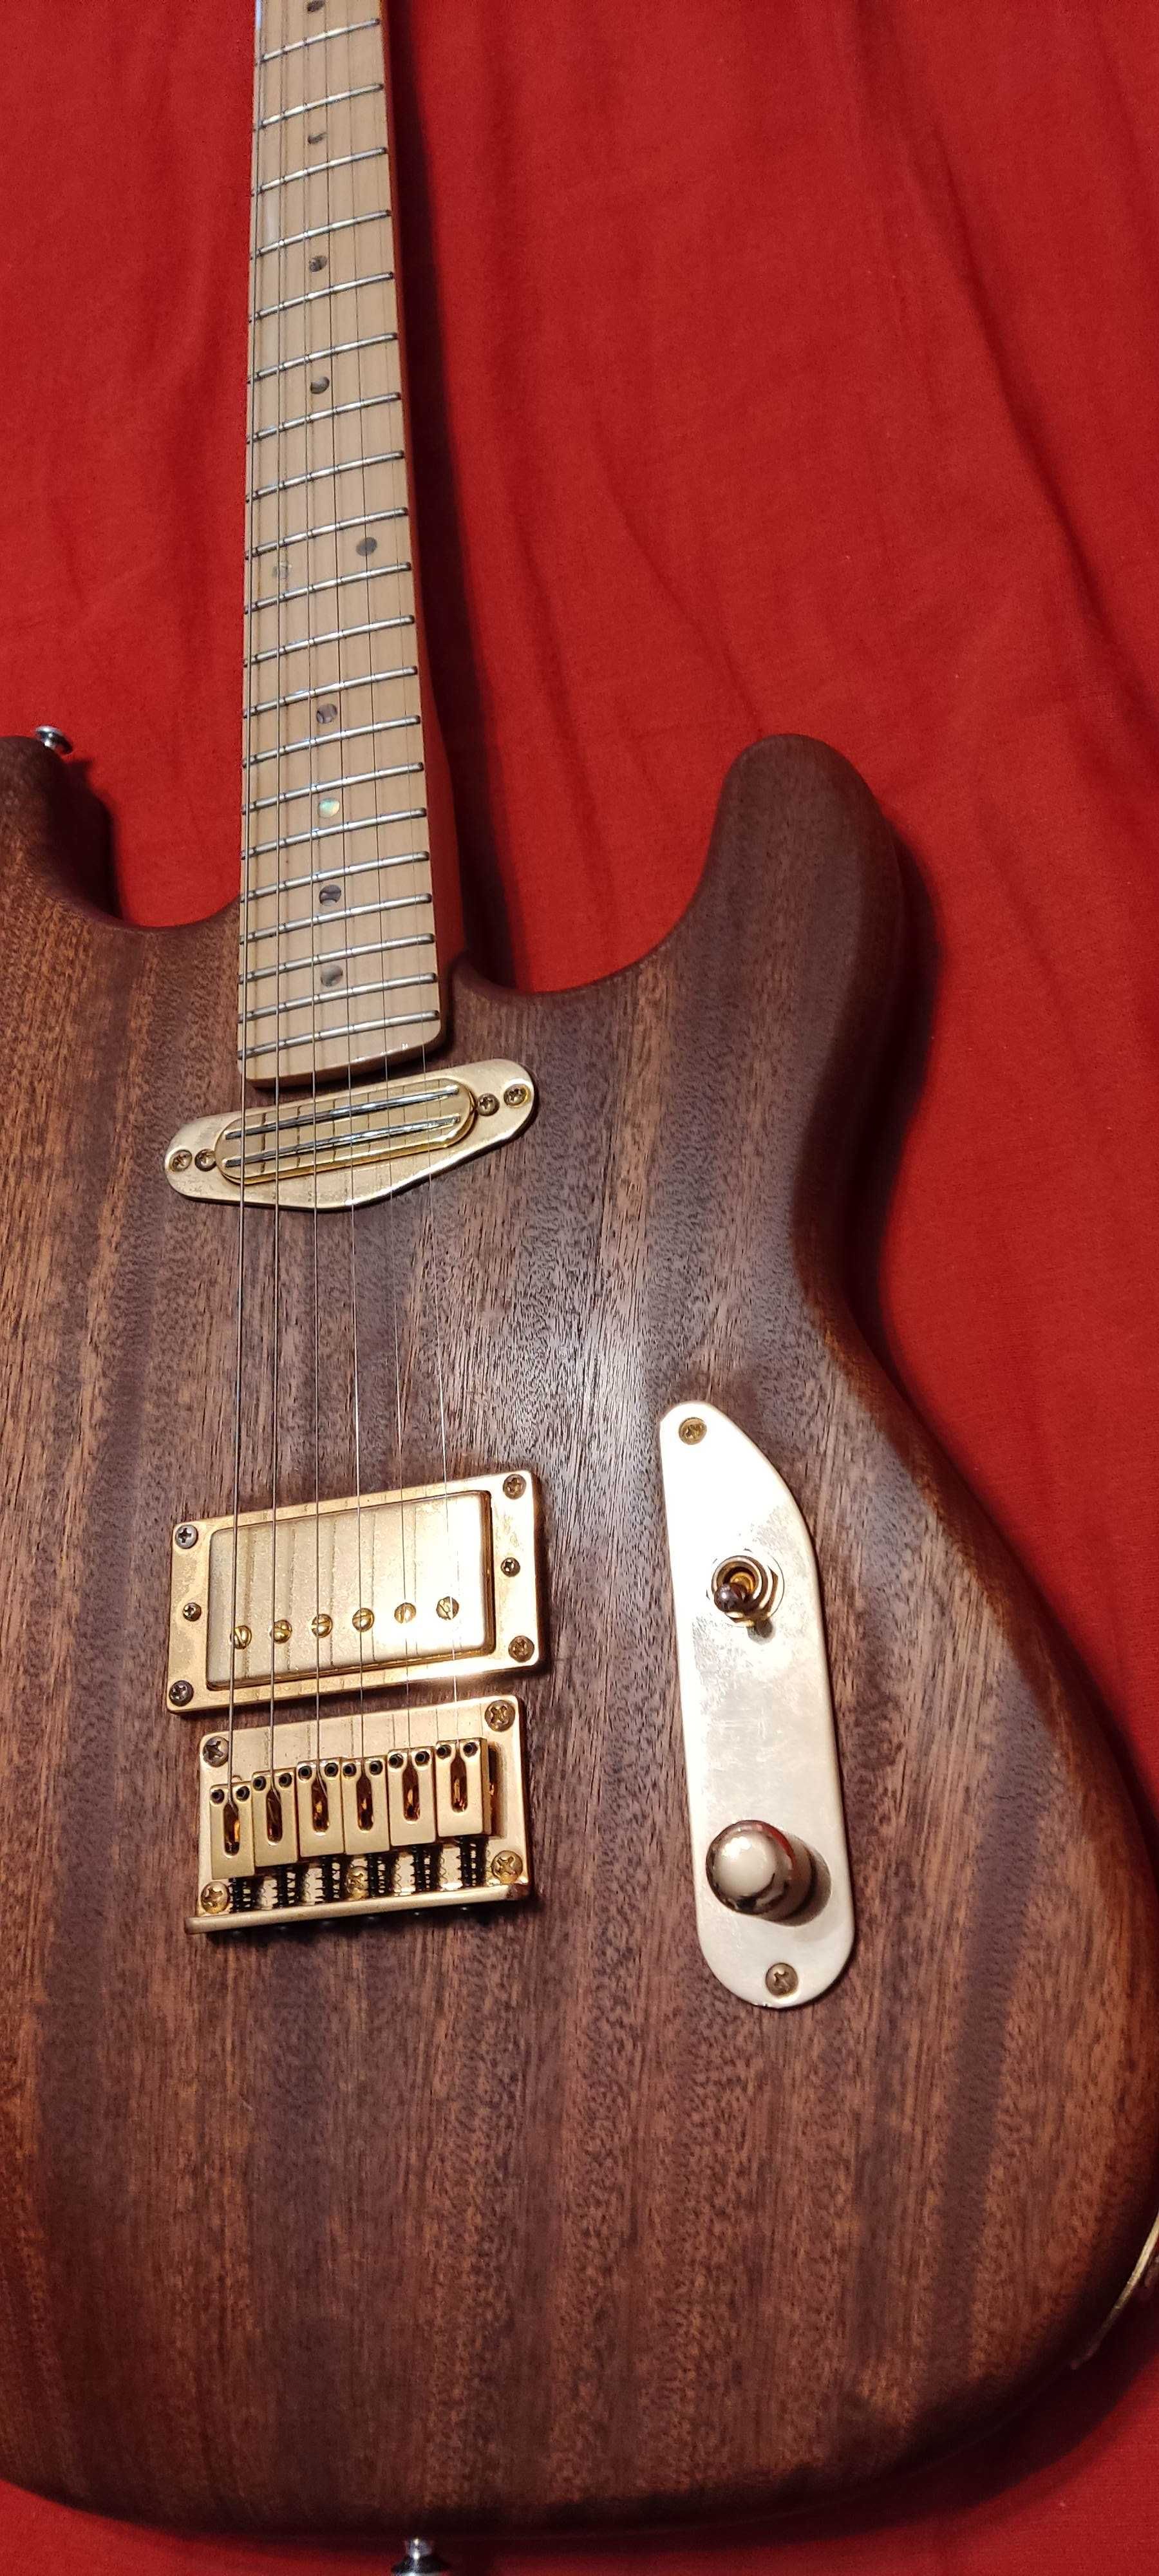 Gitara lutnicza superstrat mahoń klon hardtail rewelacyjny dżwiek